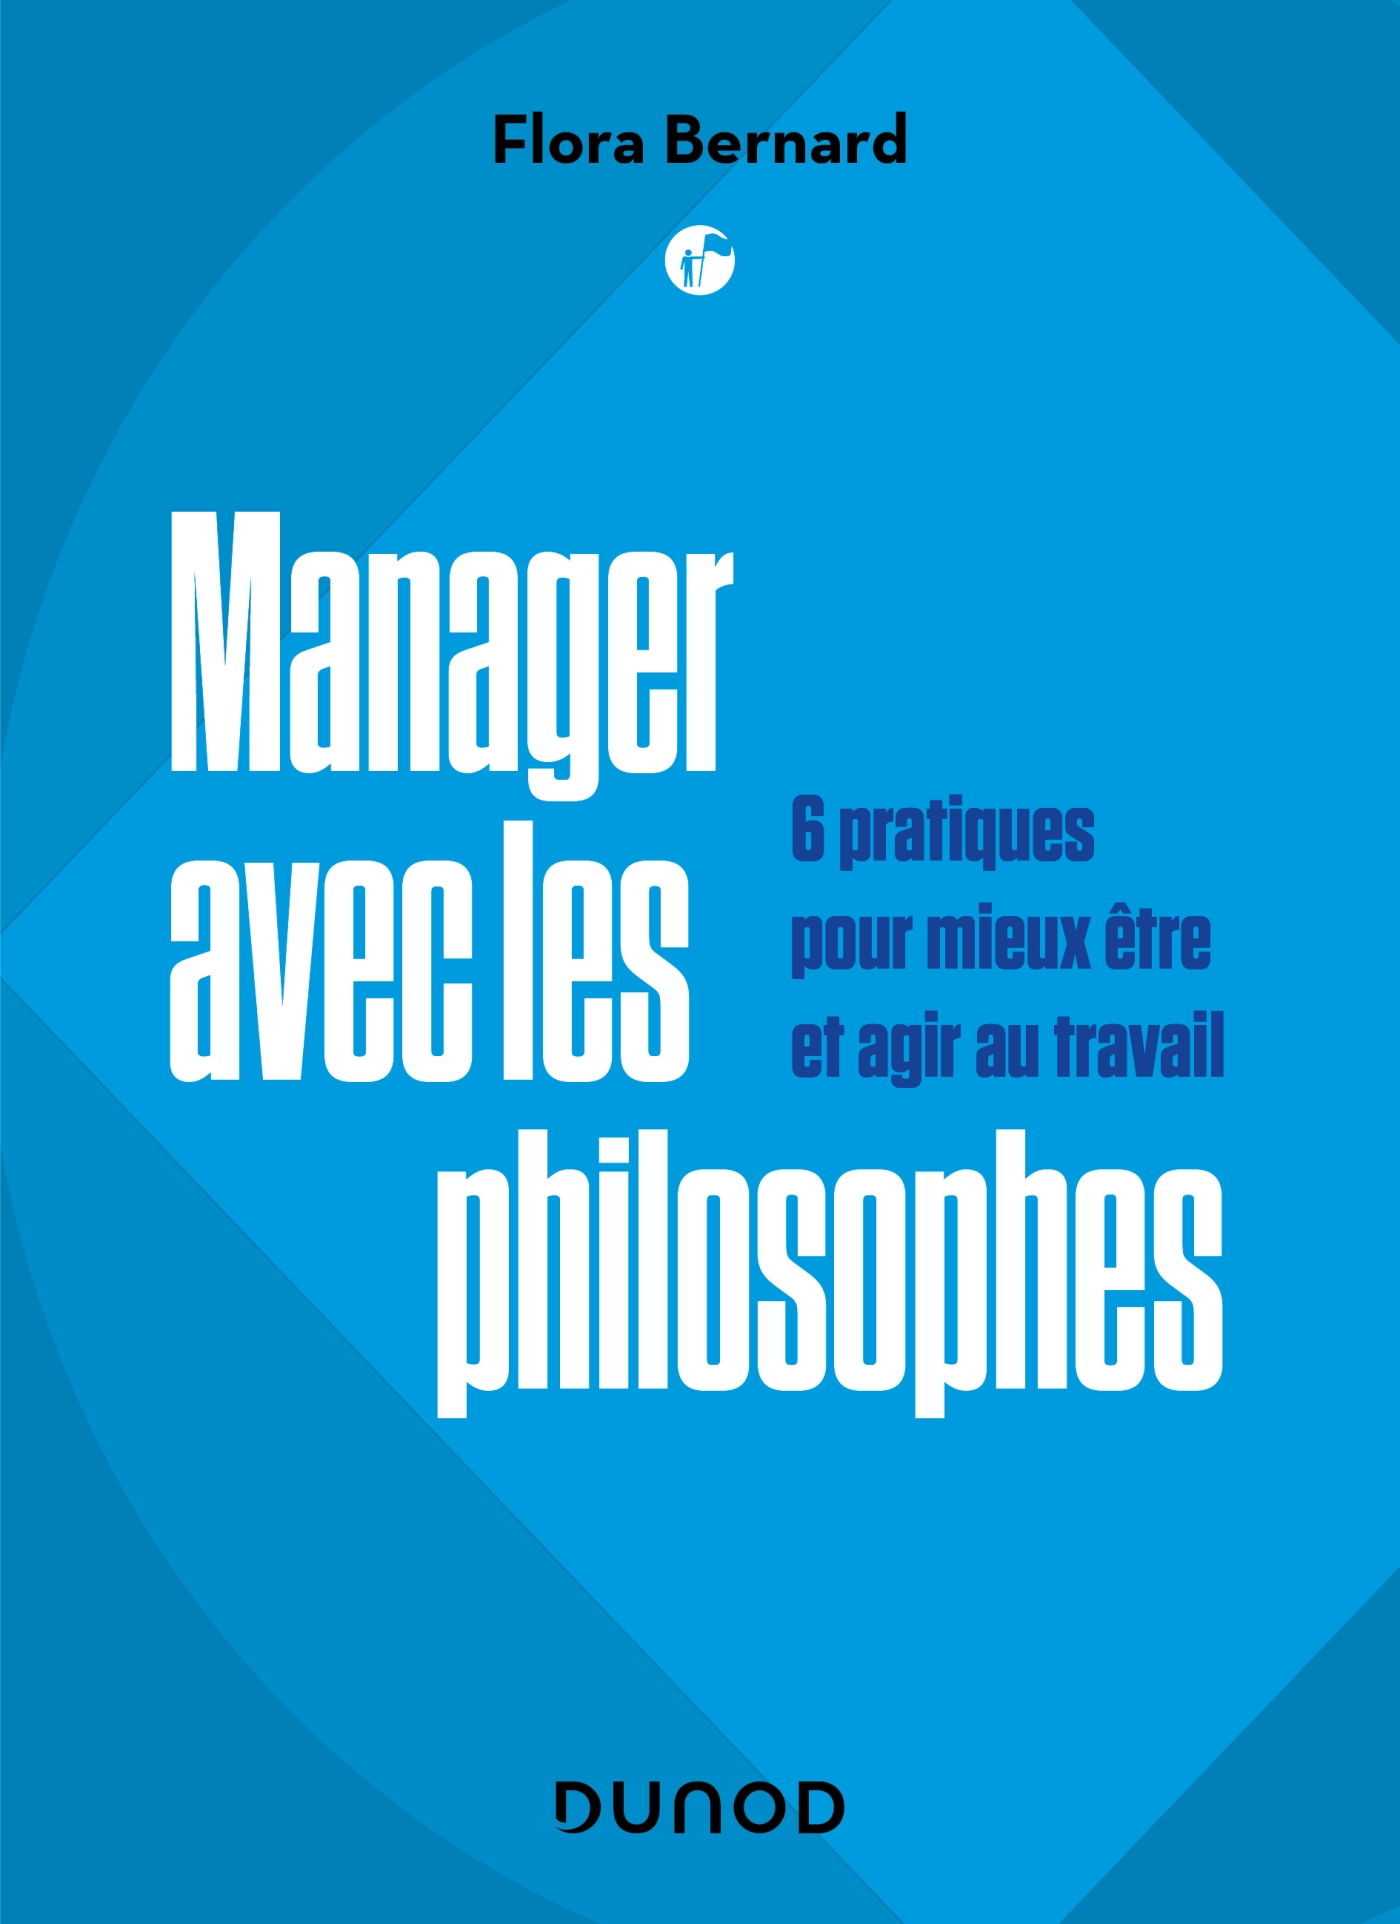 Manager avec les philosophes - 6 pratiques pour mieux être et agir au  travail - Livre et ebook Management - Leadership de Flora Bernard - Dunod